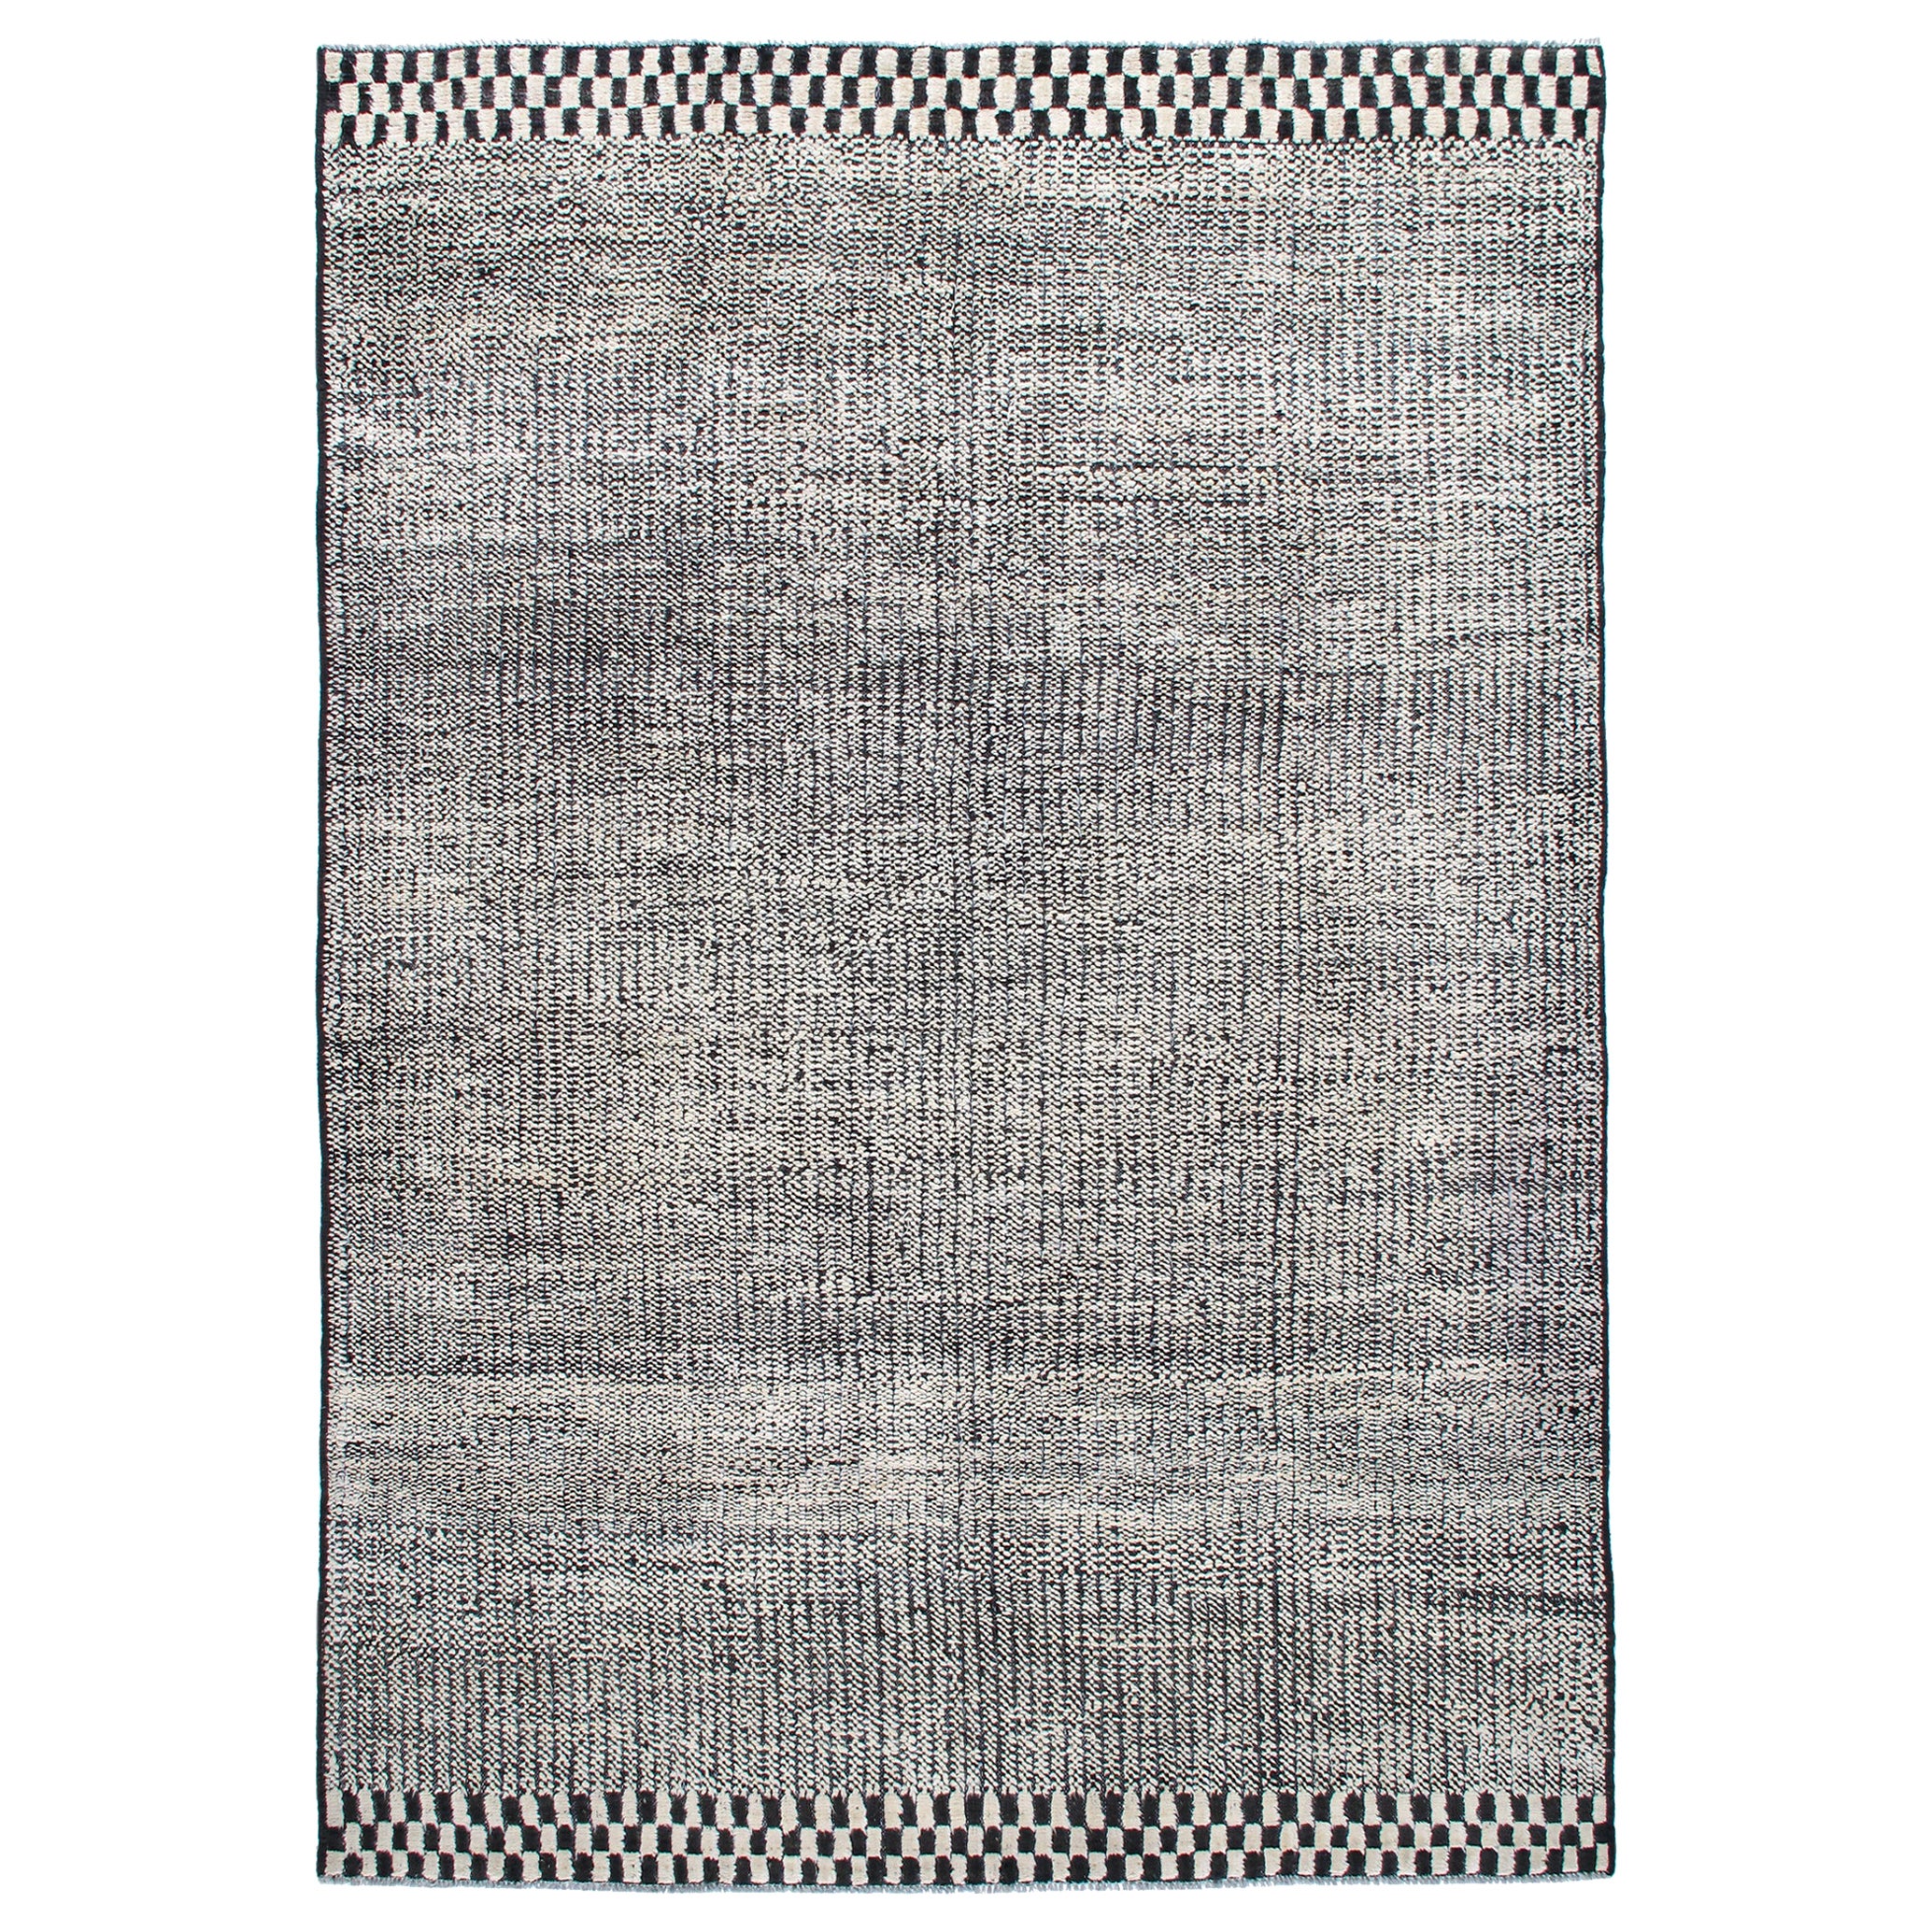 Moderner moderner karierter und geometrischer Schwarz-Weiß-Teppich aus Wolle und Baumwolle